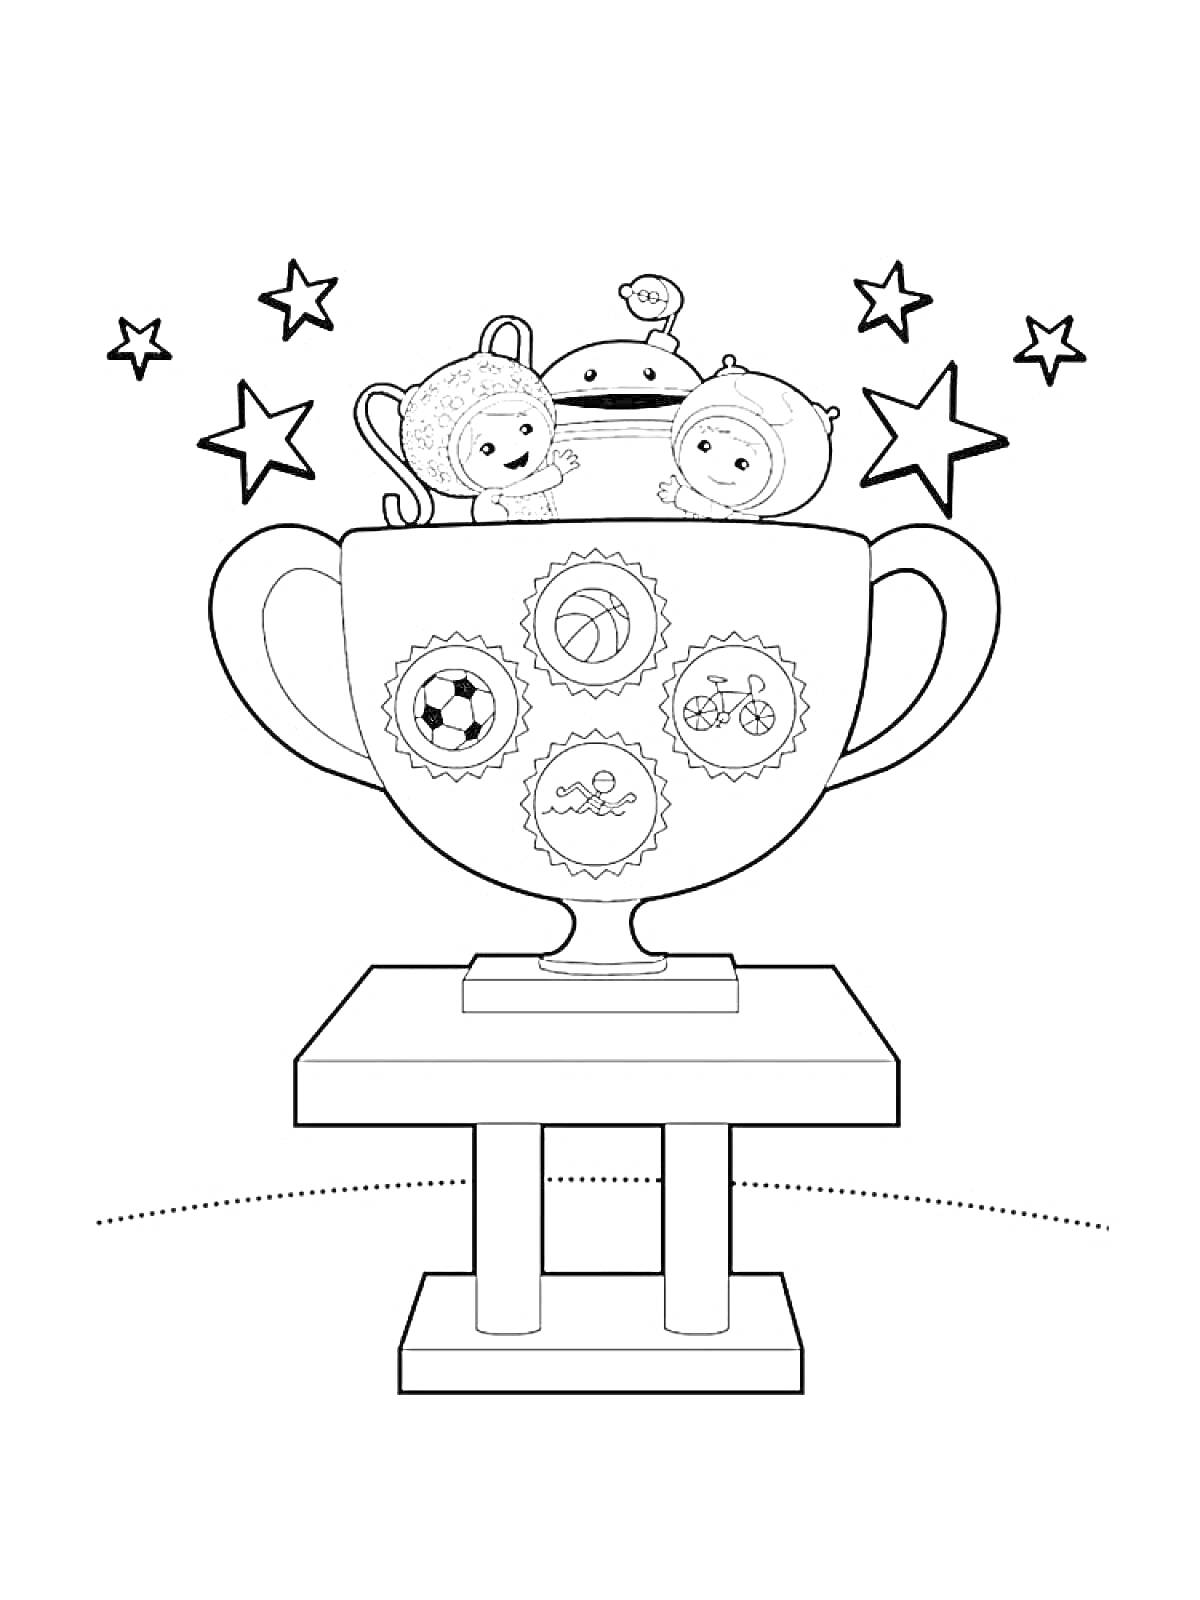 Раскраска Кубок с машинками и мячами, окружённый звёздами